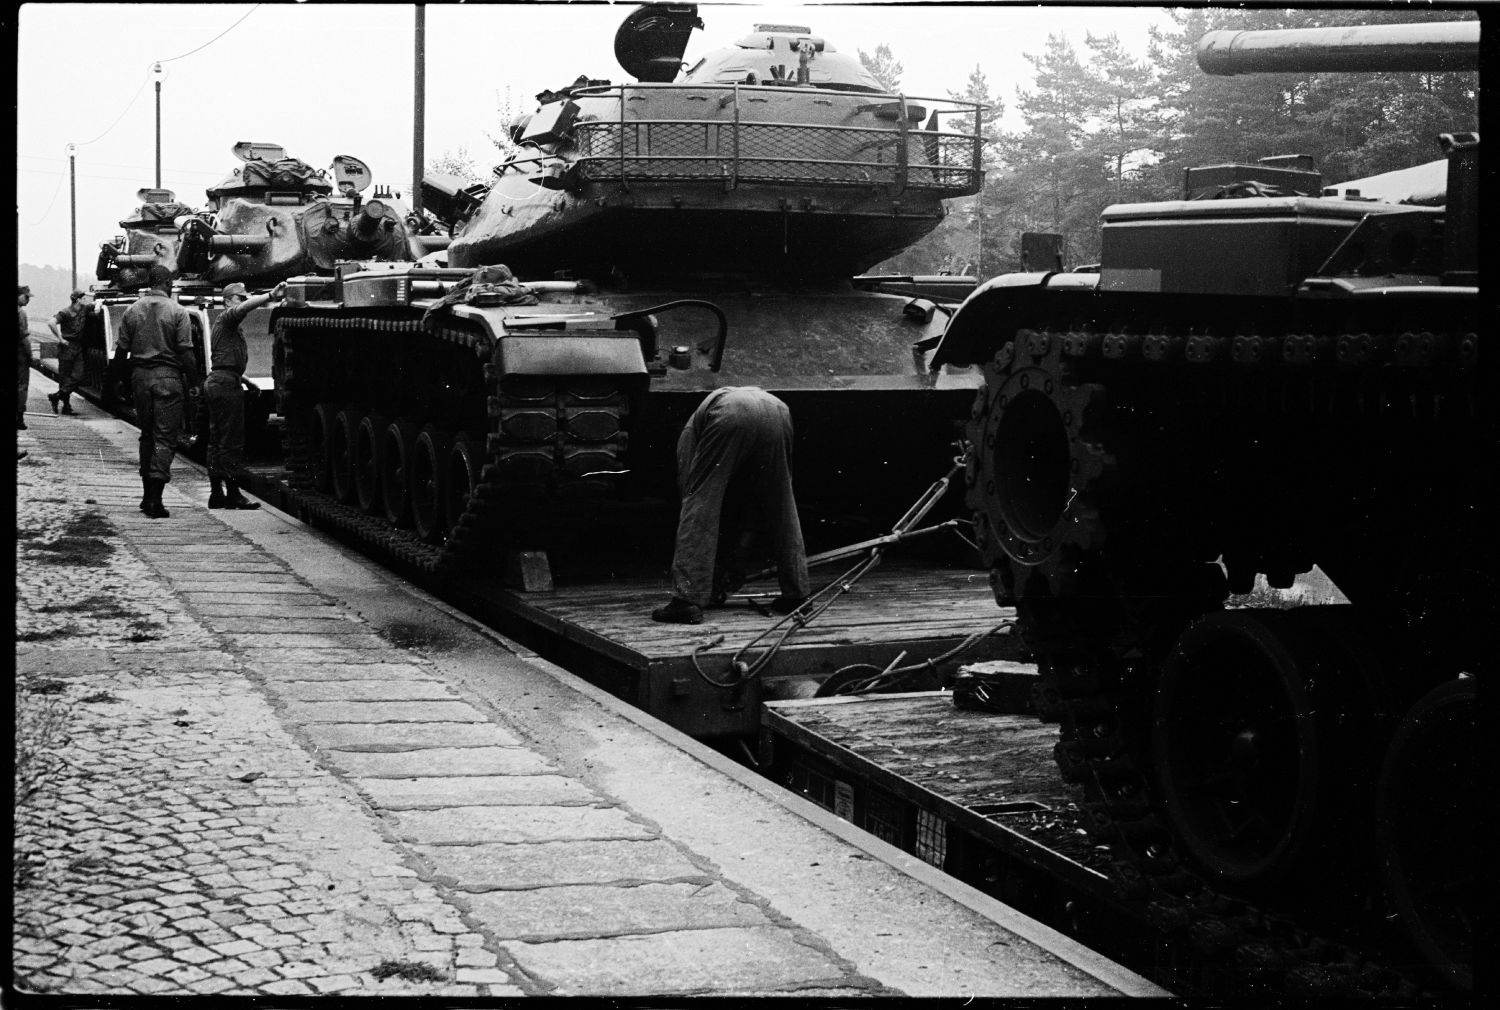 S/w-Fotografie: Transport von Militärfahrzeugen der U.S. Army Berlin Brigade anlässlich einer Truppenübung in Grafenwöhr in Bayern